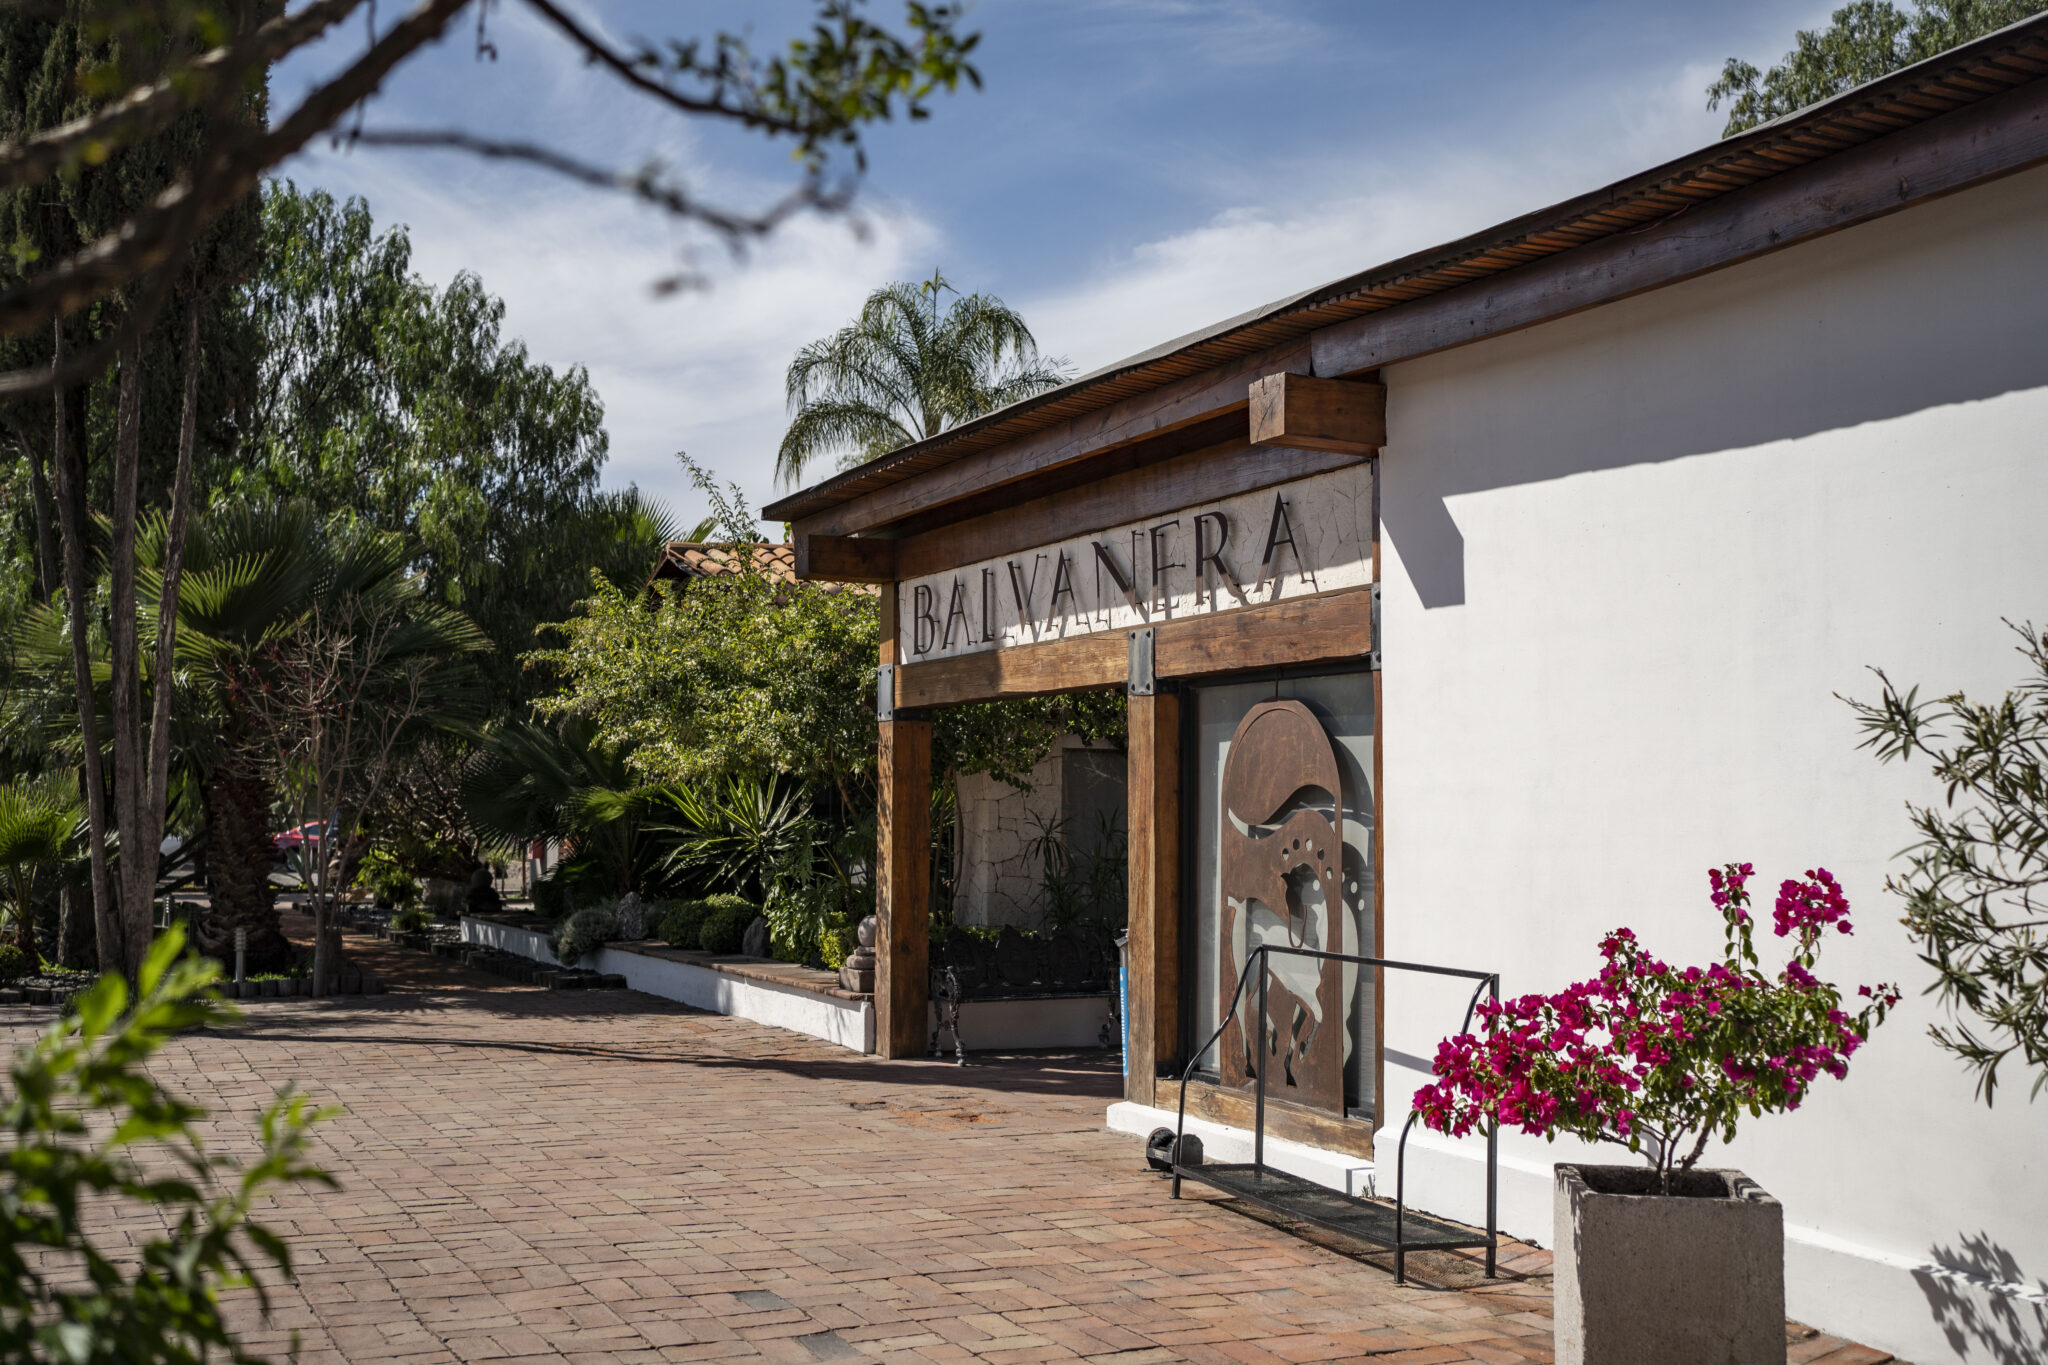 Balvanera, a polo club with international prestige - Turismo del Estado de  Querétaro